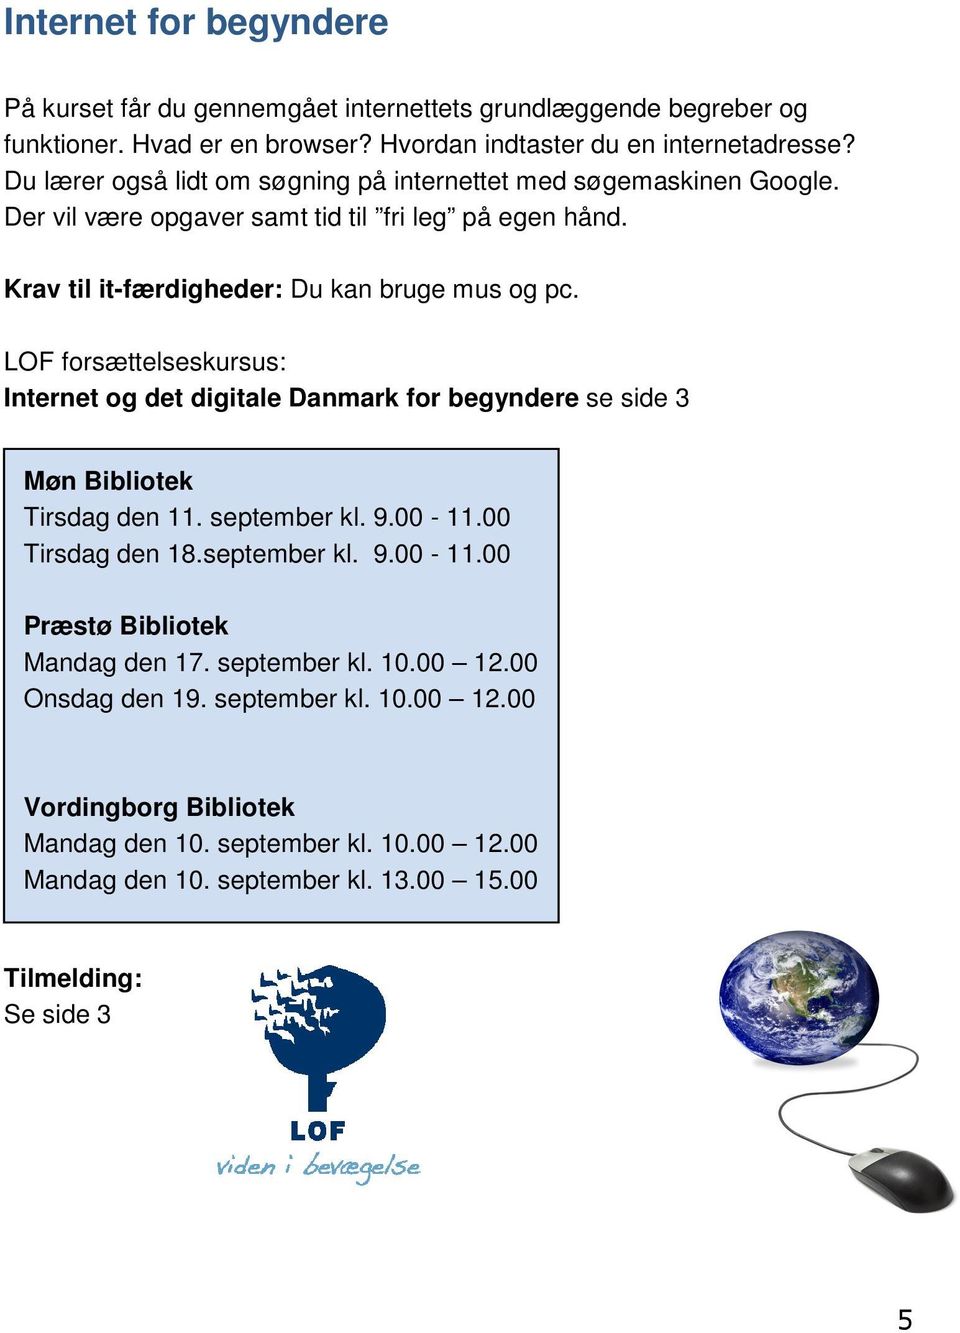 LOF forsættelseskursus: Internet og det digitale Danmark for begyndere se side 3 Møn Bibliotek Tirsdag den 11. september kl. 9.00-11.00 Tirsdag den 18.september kl. 9.00-11.00 Præstø Bibliotek Mandag den 17.